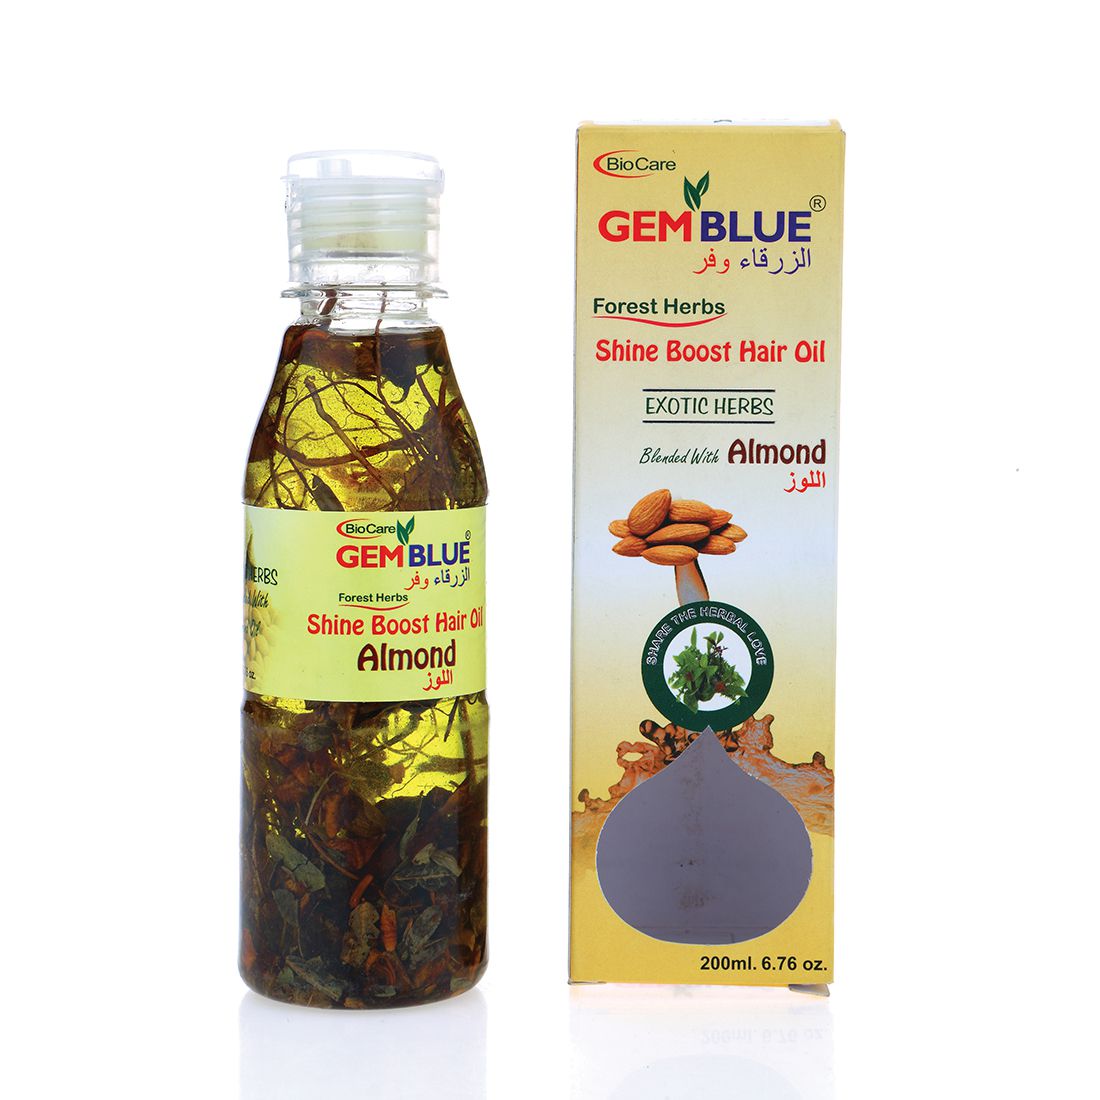     			gemblue biocare Almond Hair Oil 200 mL